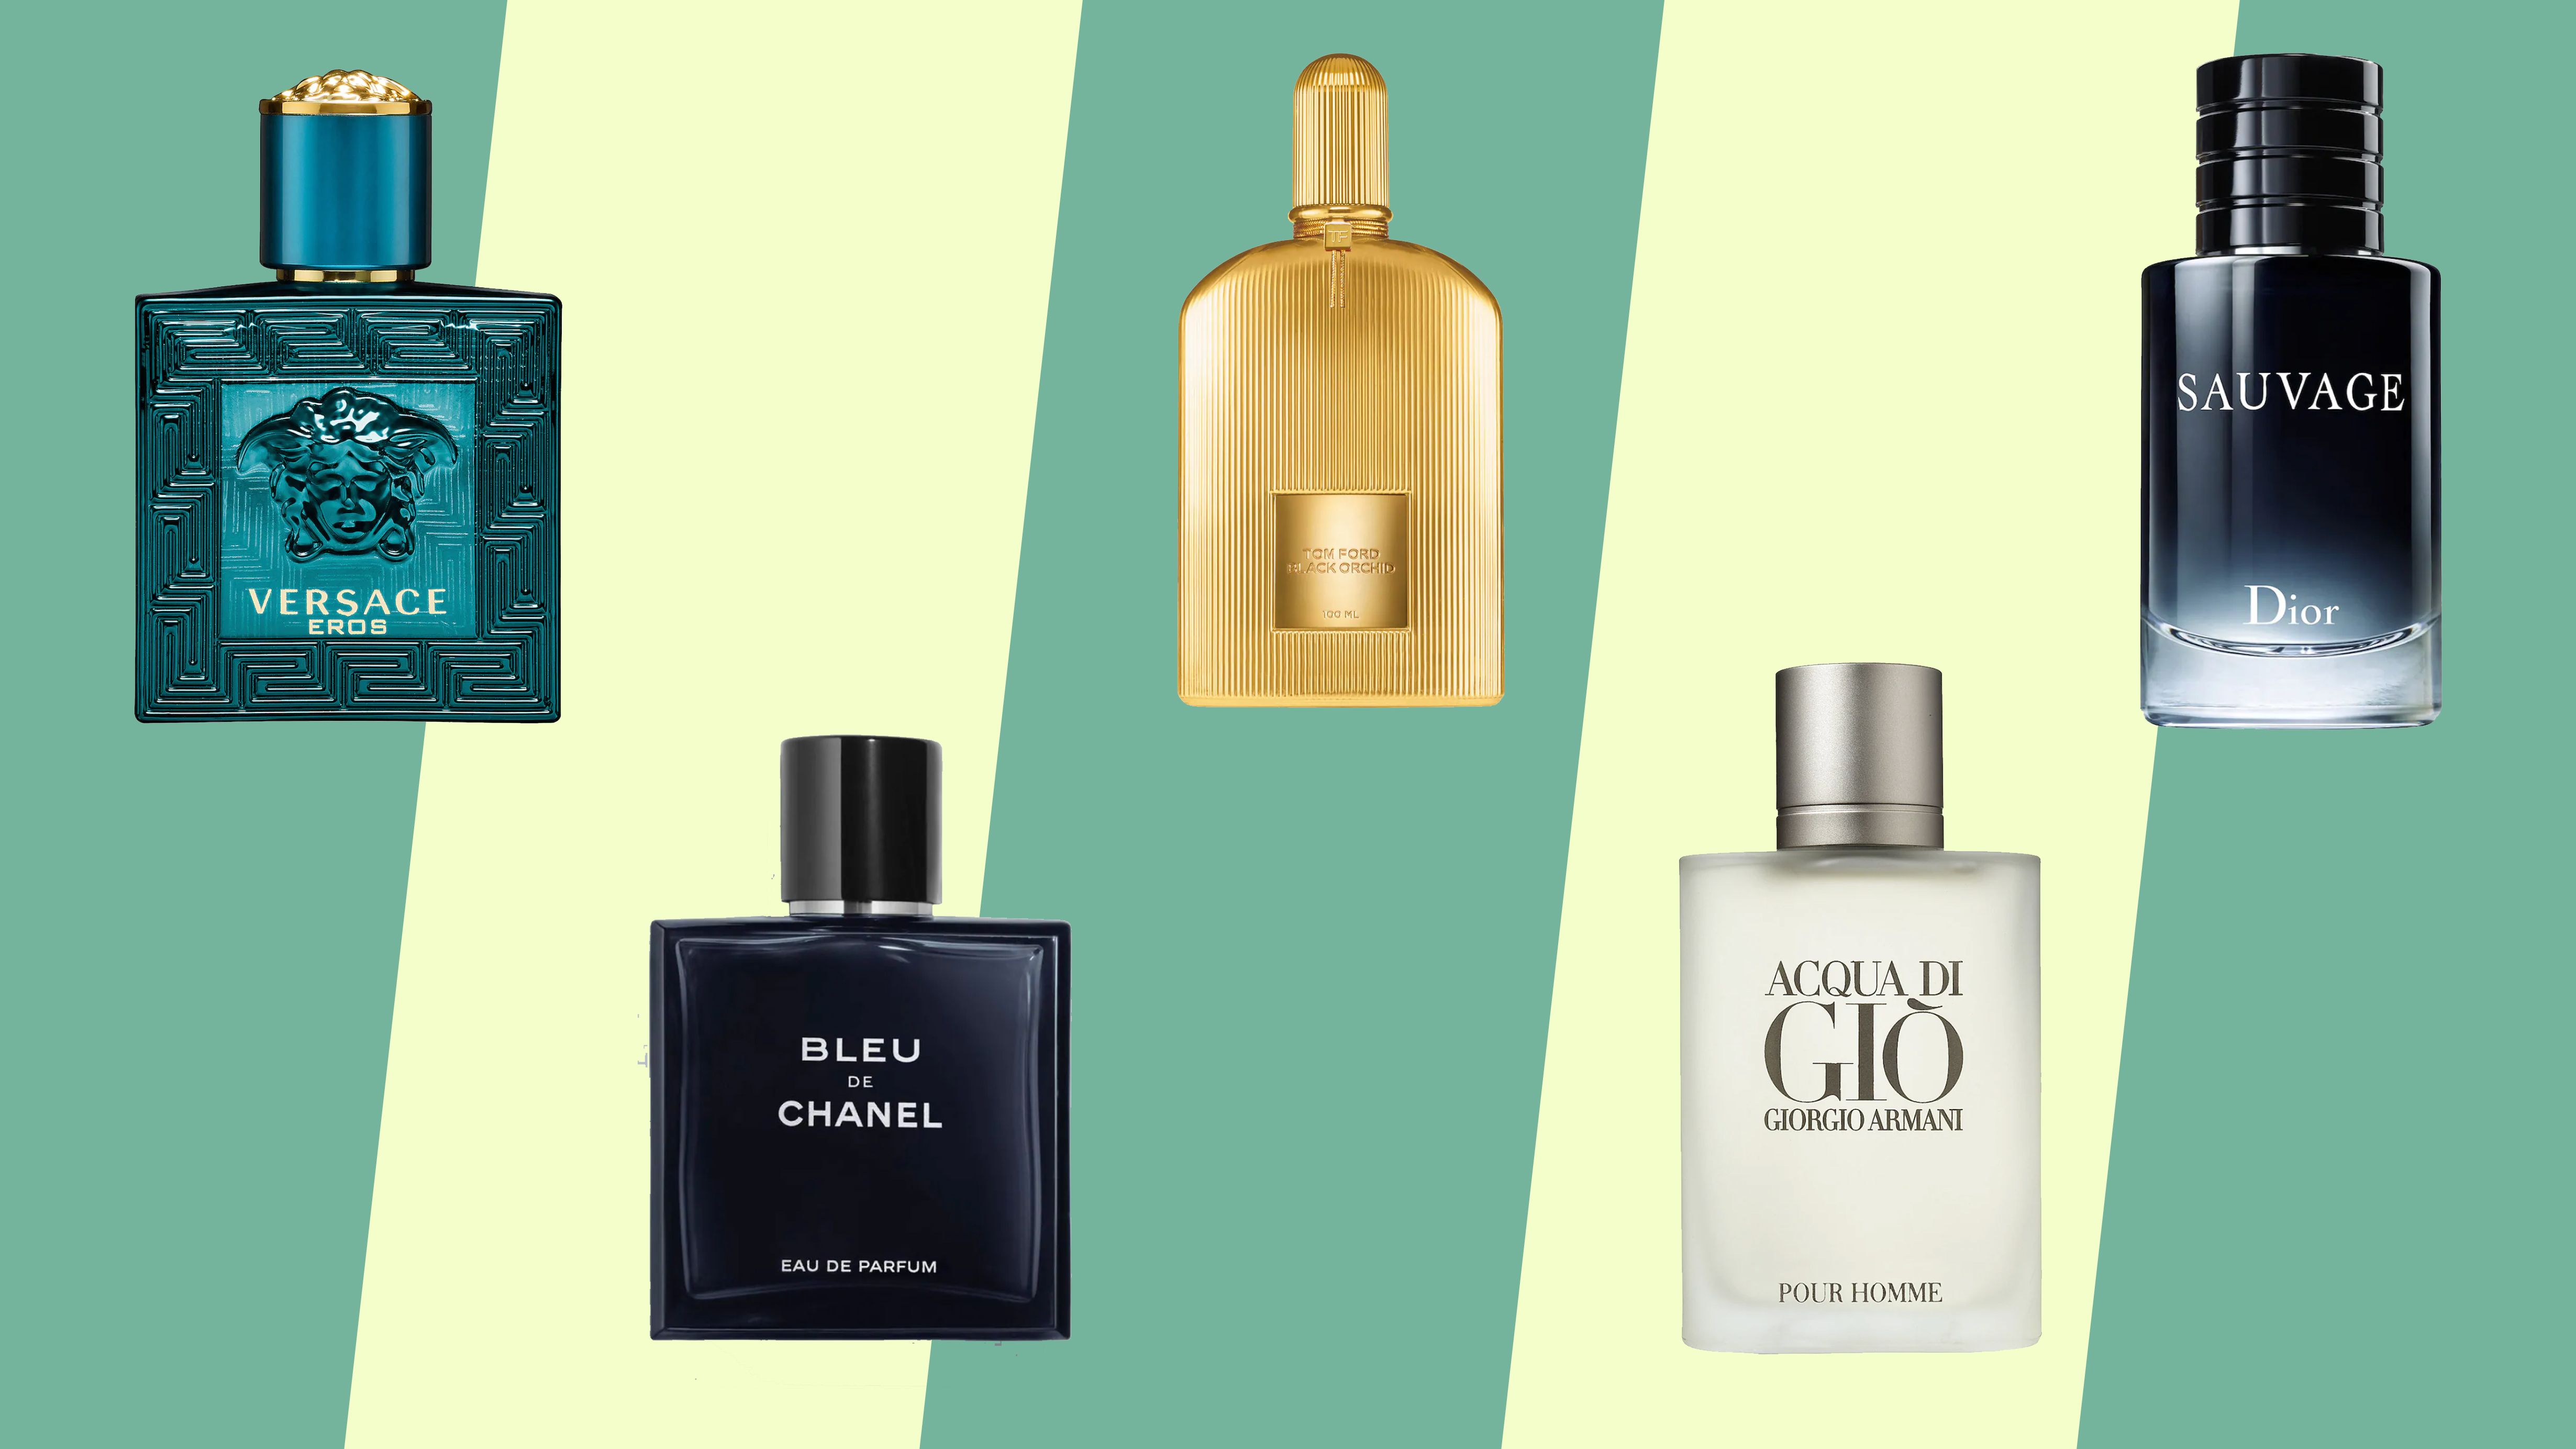 Dior Homme 2020 vs Bleu de Chanel Eau de Parfum. Let's compare